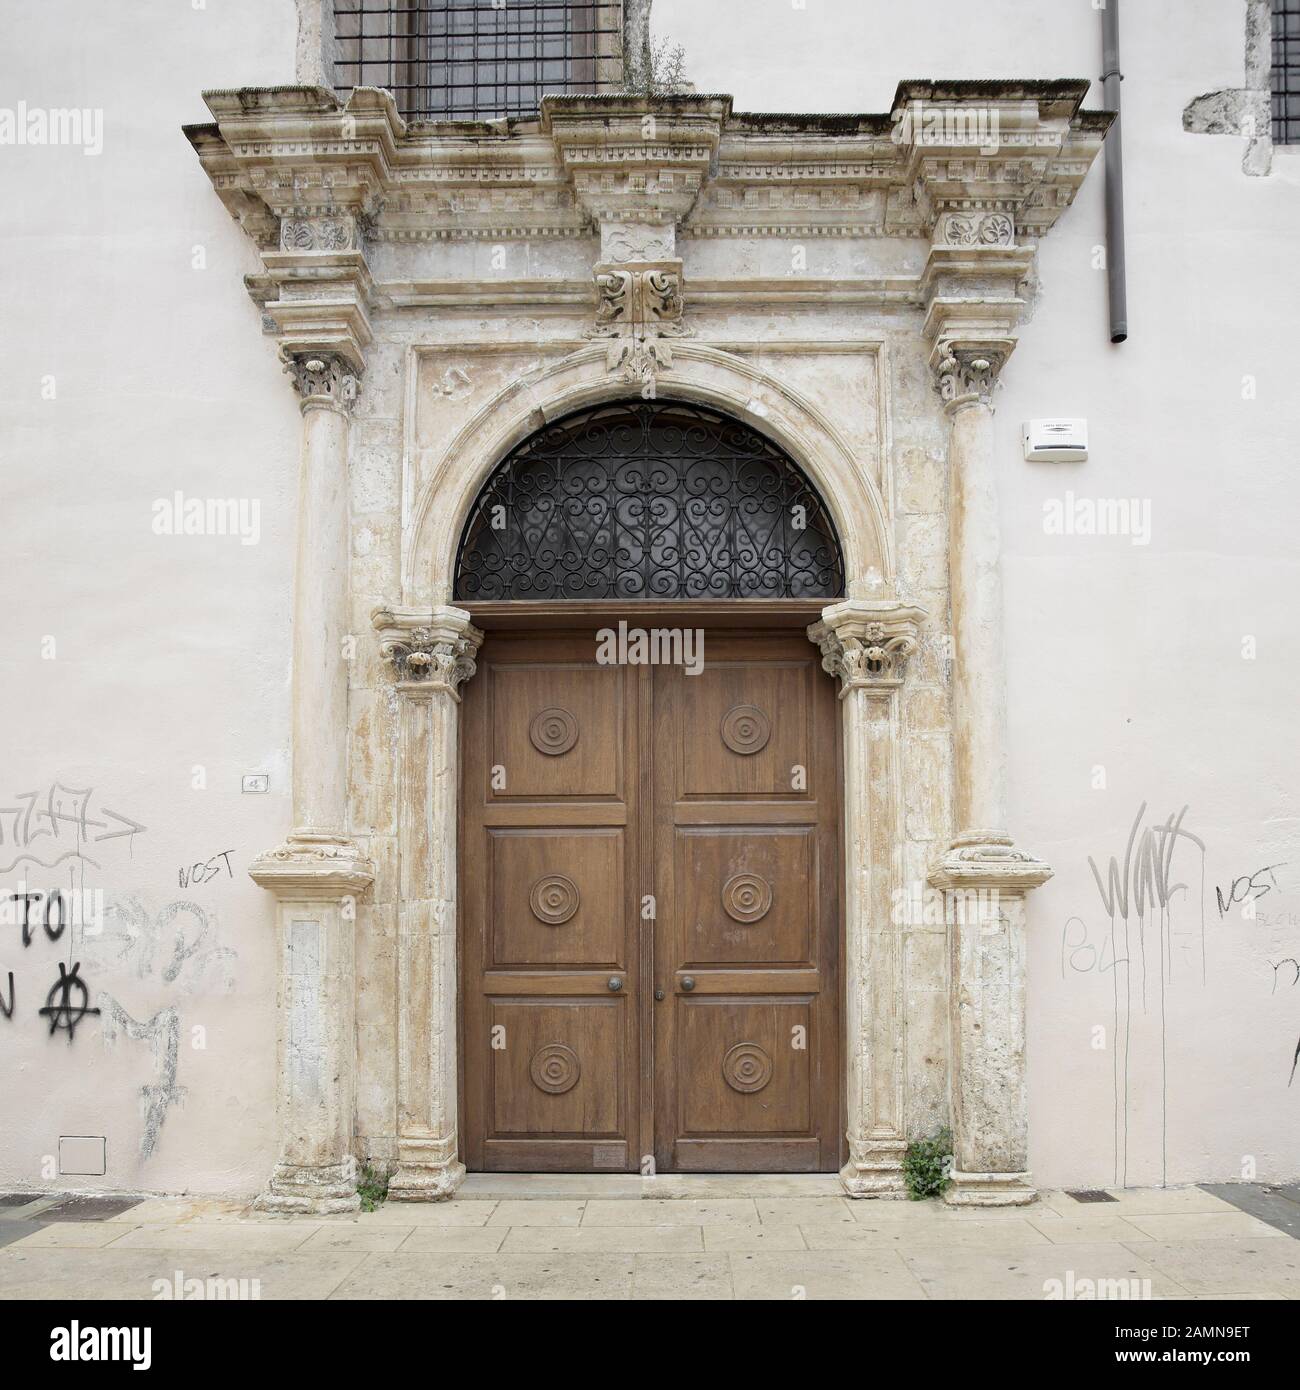 Una porta veneziana un po' trascurata, situata e catturata all'interno della città vecchia di Rethymnon, Creta. Foto Stock